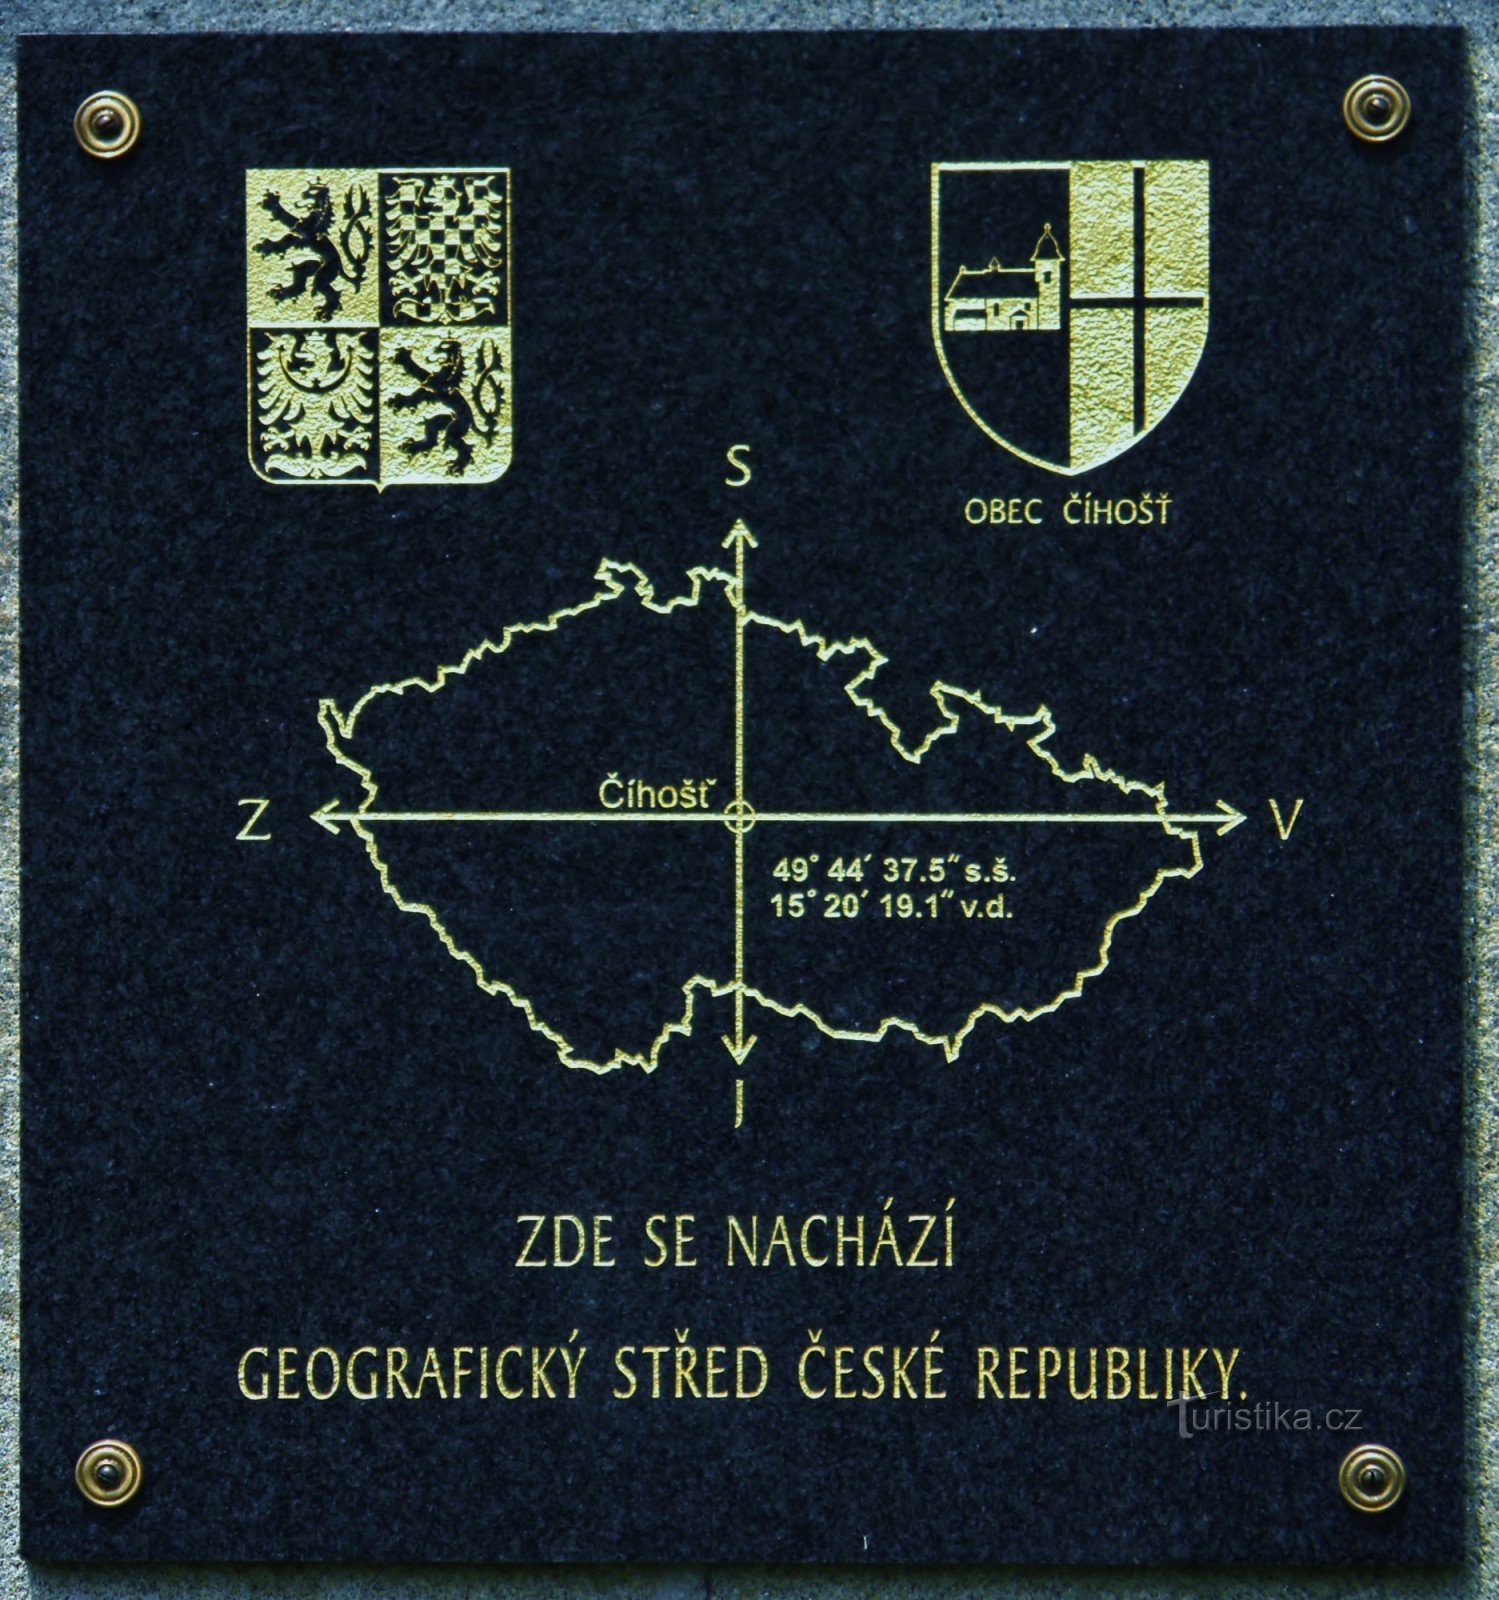 Informationstavla på ett stenmonument i Tjeckiens geografiska centrum.